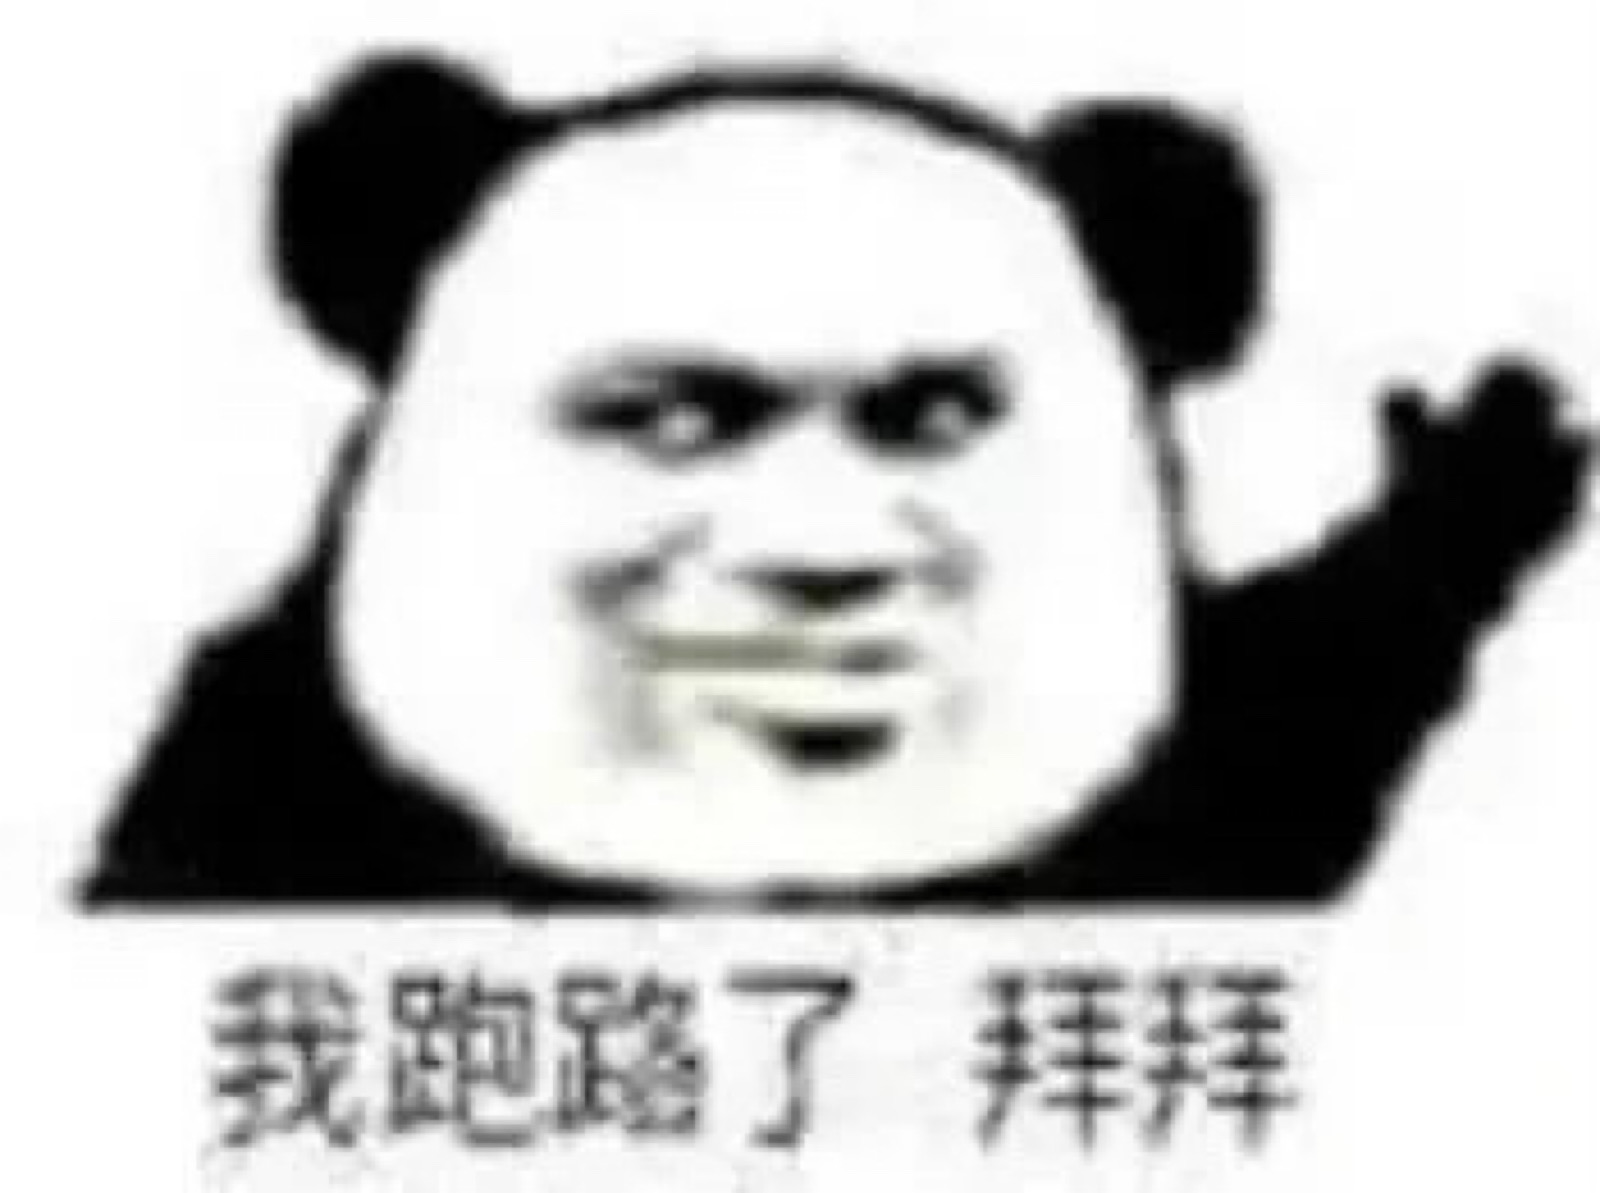 熊猫人表情包